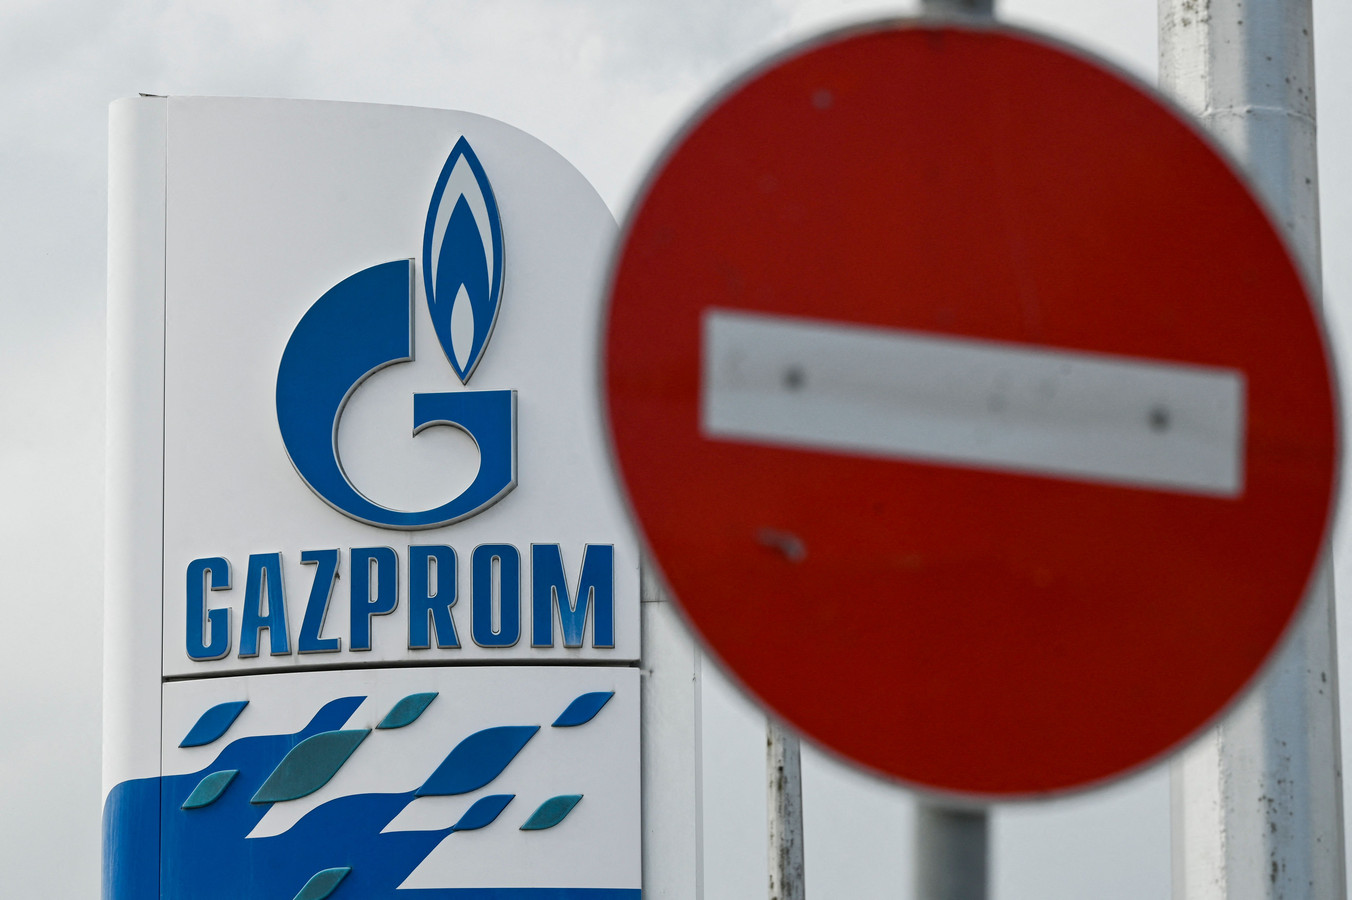 Gemeenten bij Gazprom zijn gebleven hoeven niet langer van energieleverancier te switchen, liet klimaatminister Jetten onlangs weten.